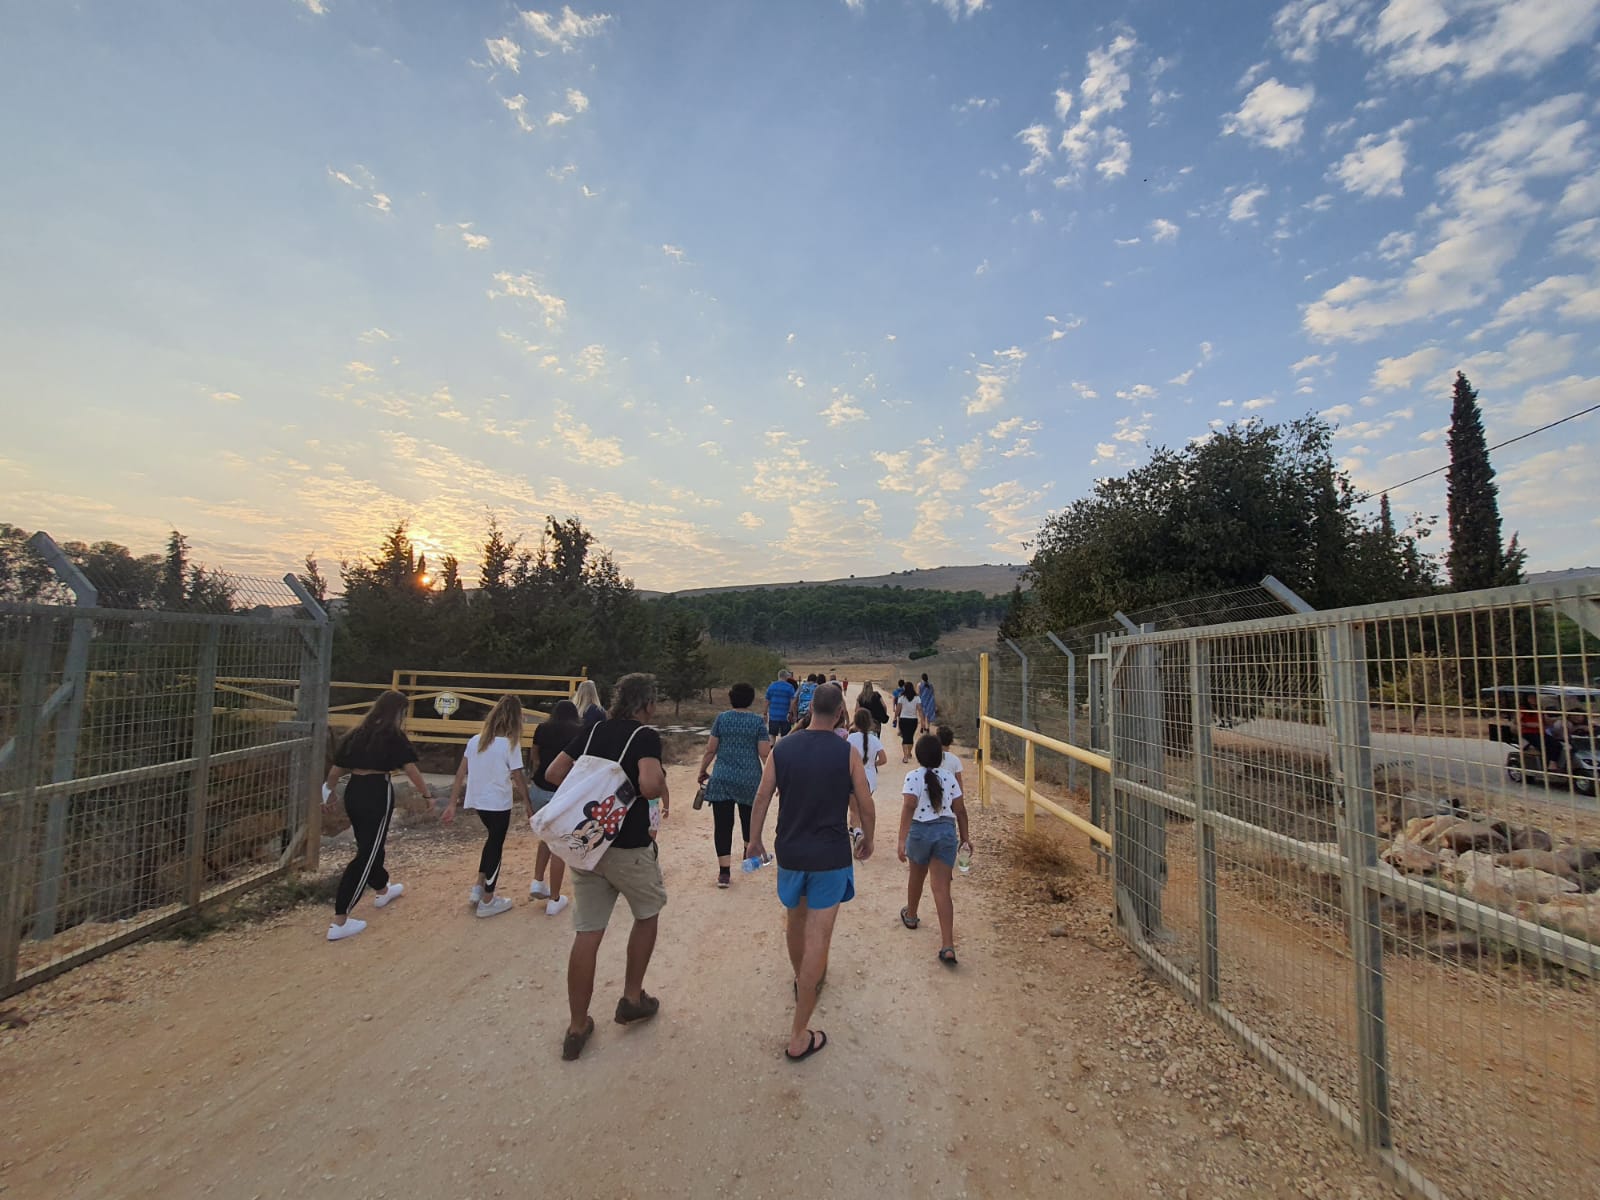 29 מיישובי מועצה אזורית הגליל העליון ביום הליכה במסגרת תכנית אפשרי בריא